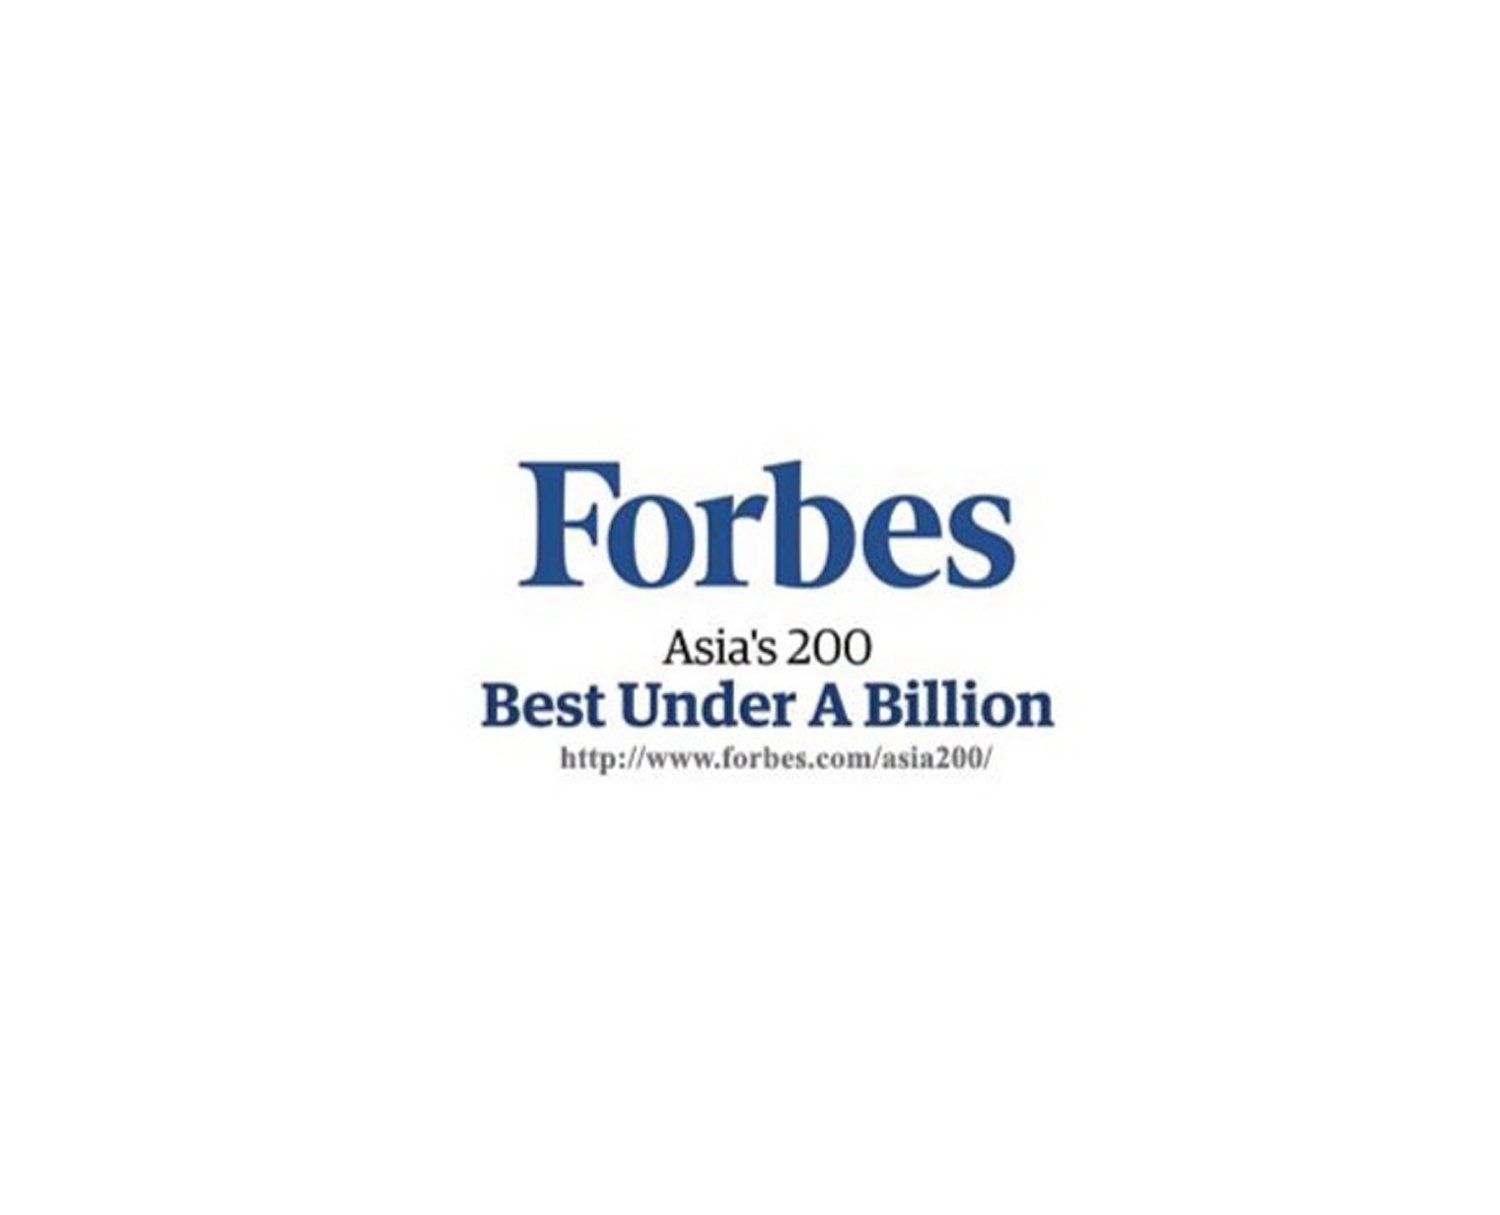 ห้างสรรพสินค้าโรบินสัน ได้รับเลือกจากนิตยสารฟอบส์ เอเชีย ให้เป็นหนึ่งใน 200 แบรนด์ที่ดีที่สุดของเอเชีย